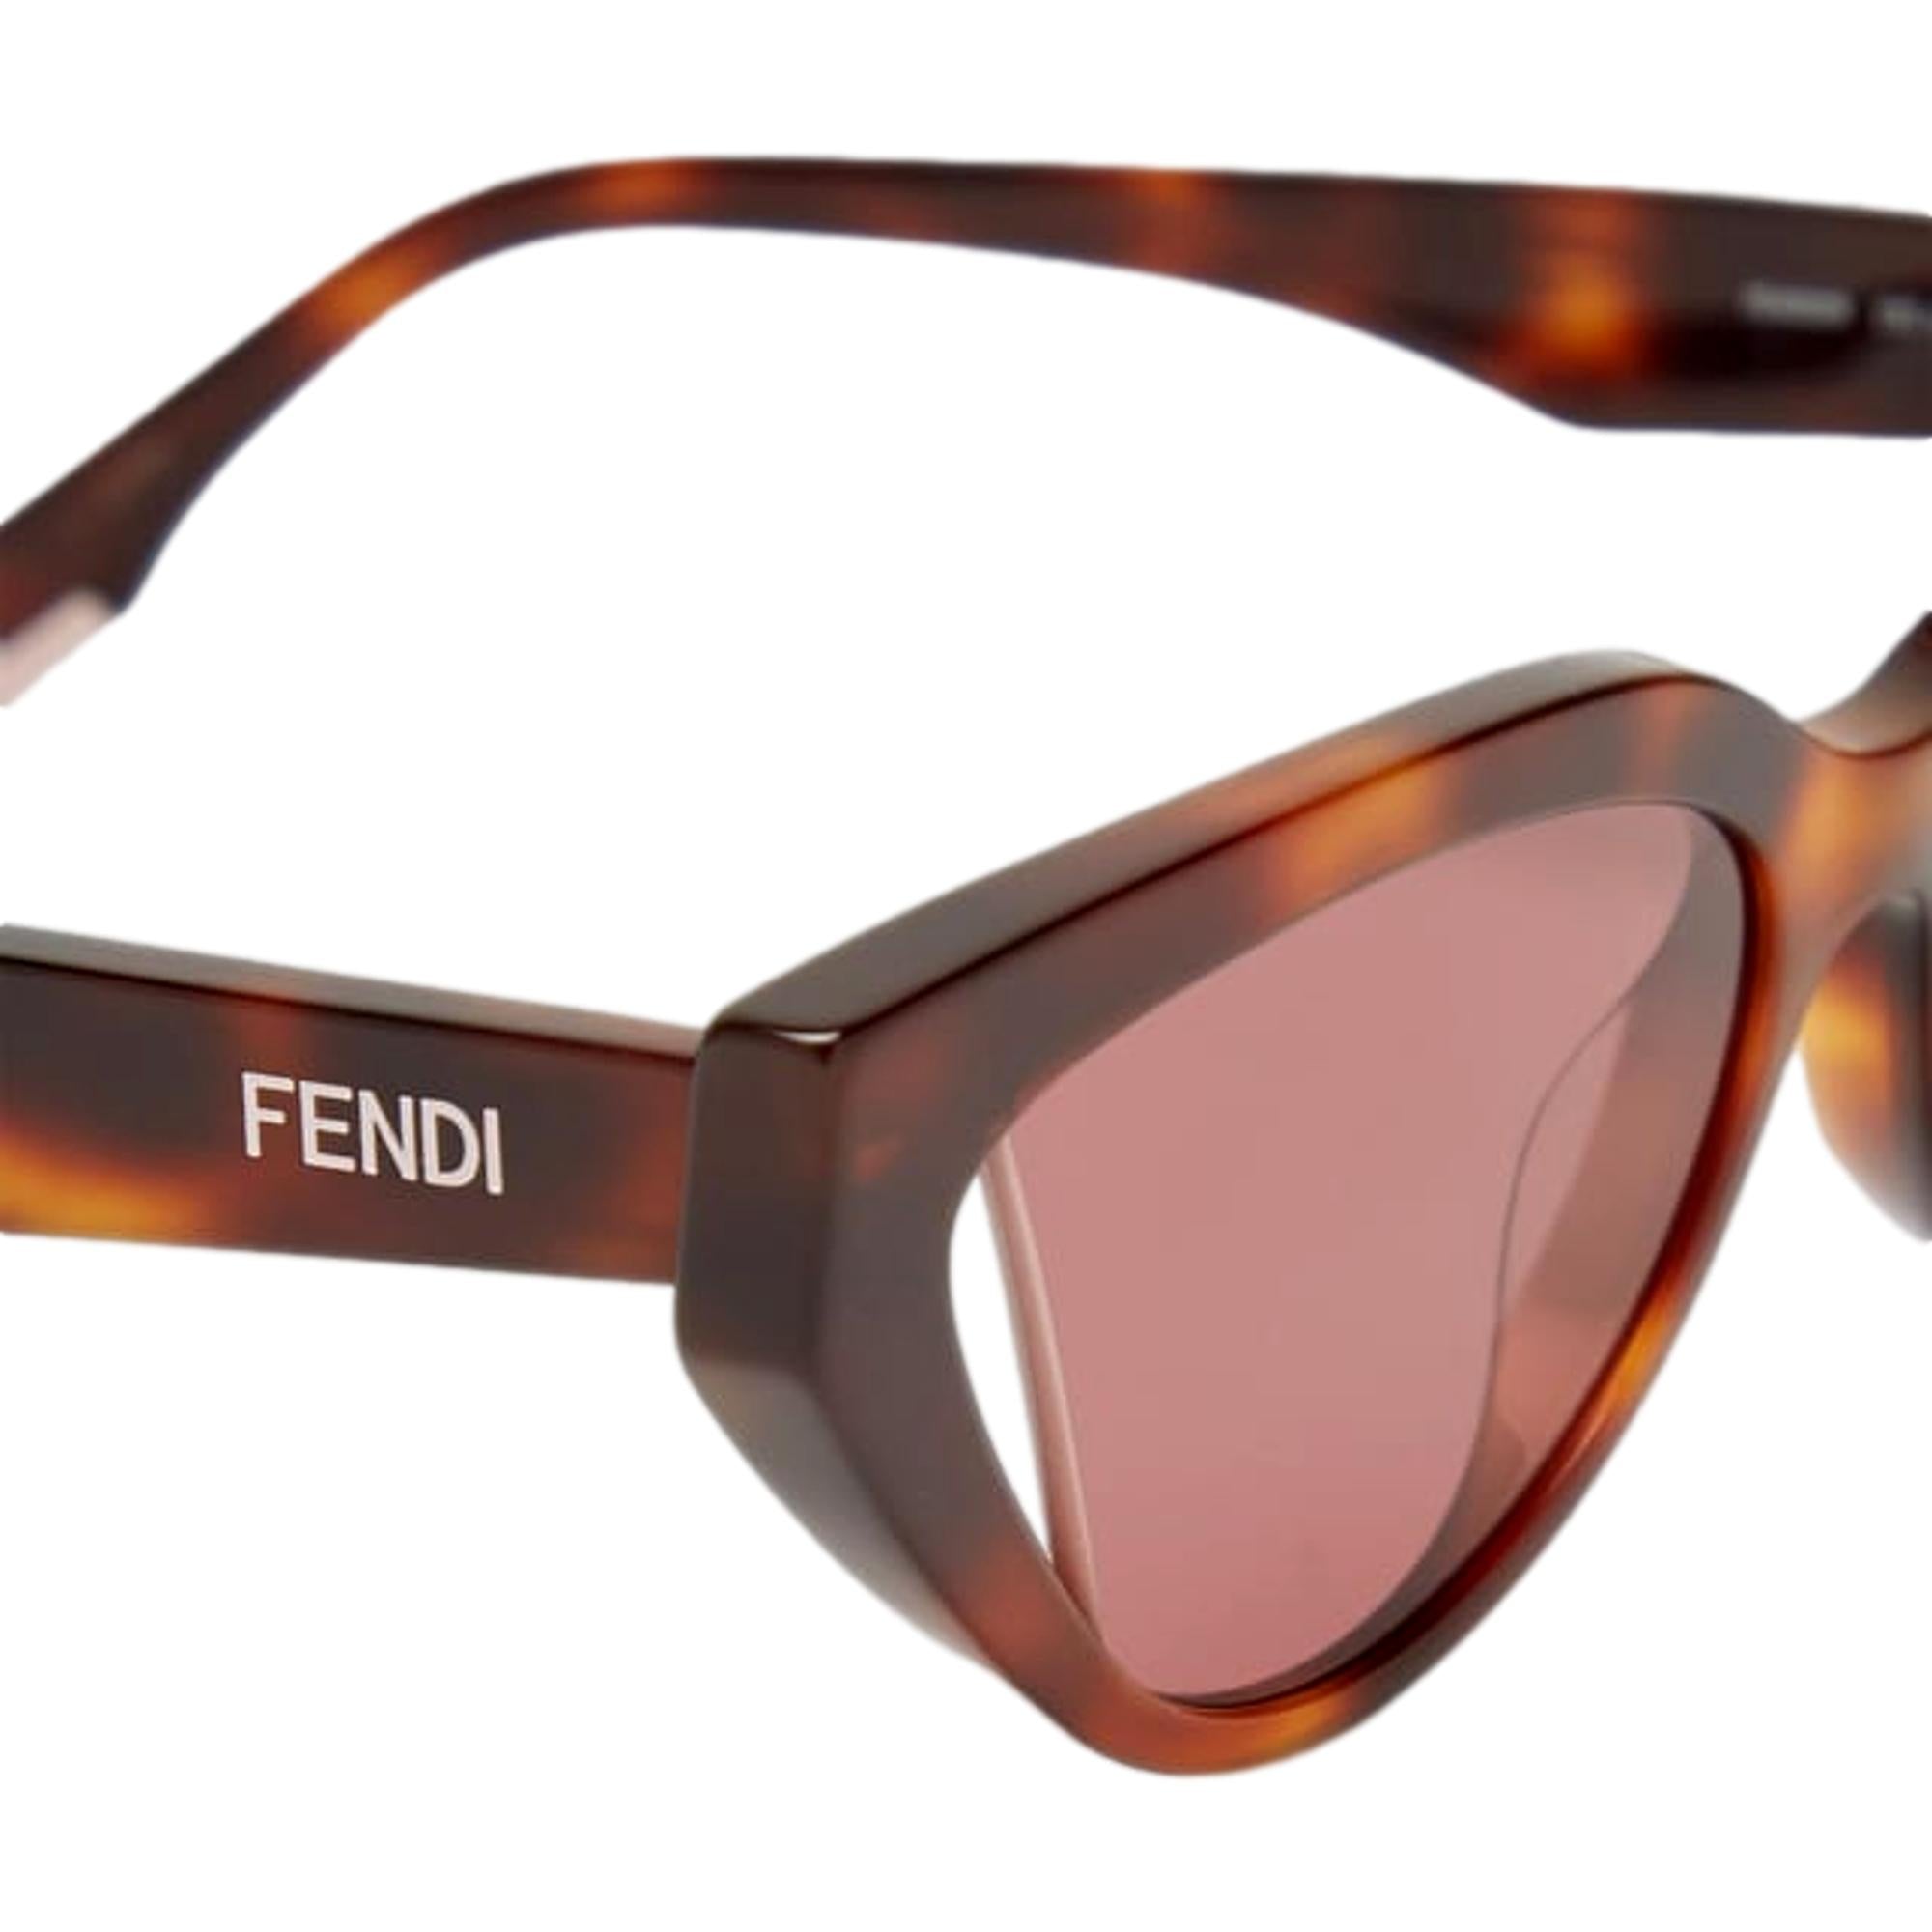 Fendi Way Pink Lenses Tortoise Shell Acetate Cat Eye Frame Sunglasses